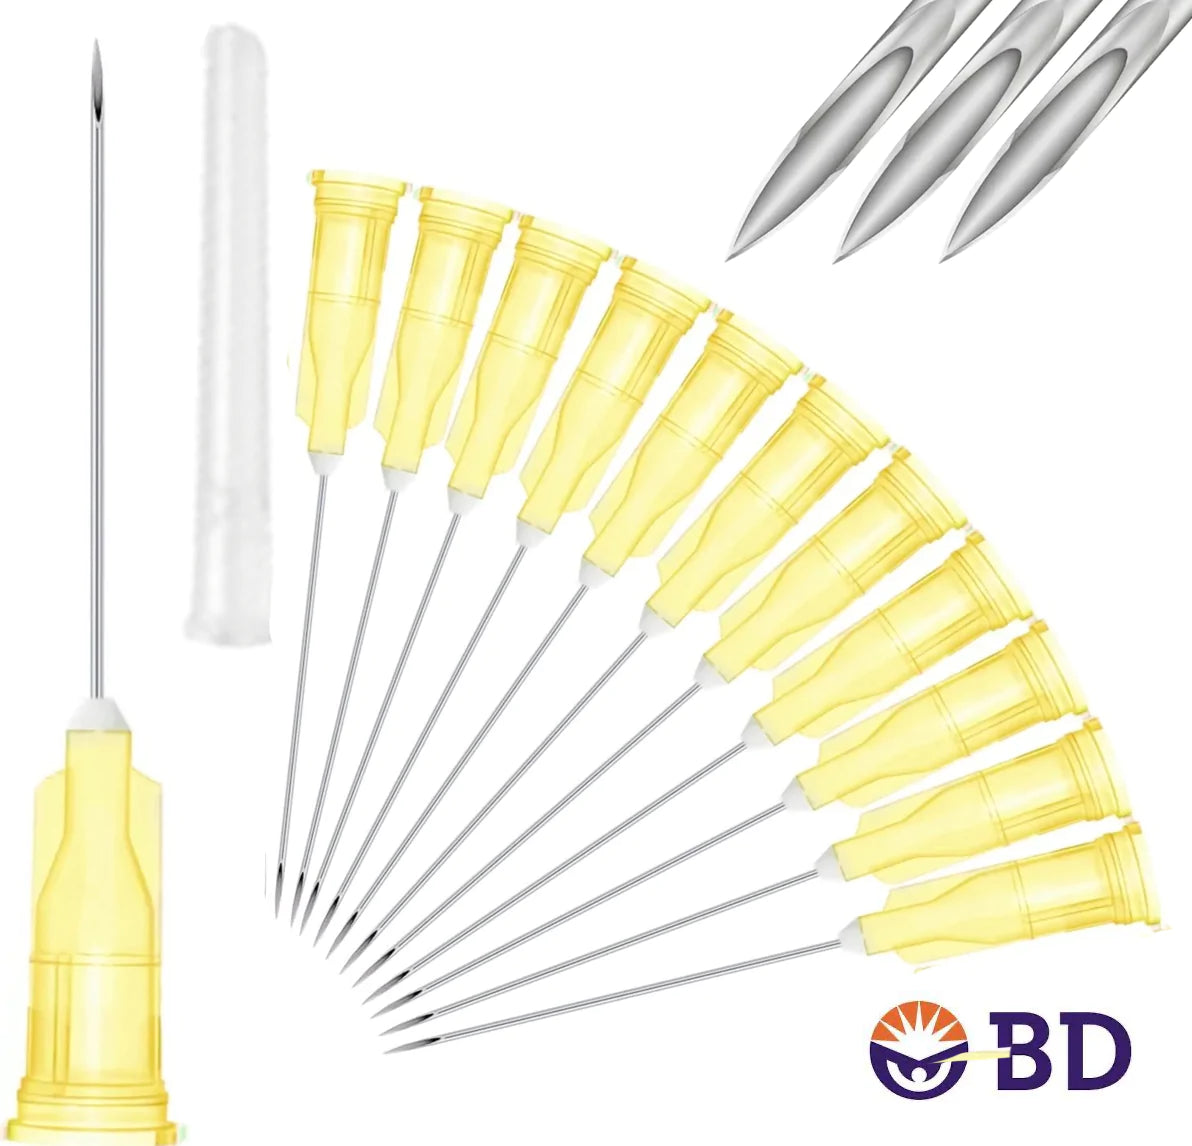 BD 20G x 1" Medical Needle (10pk)